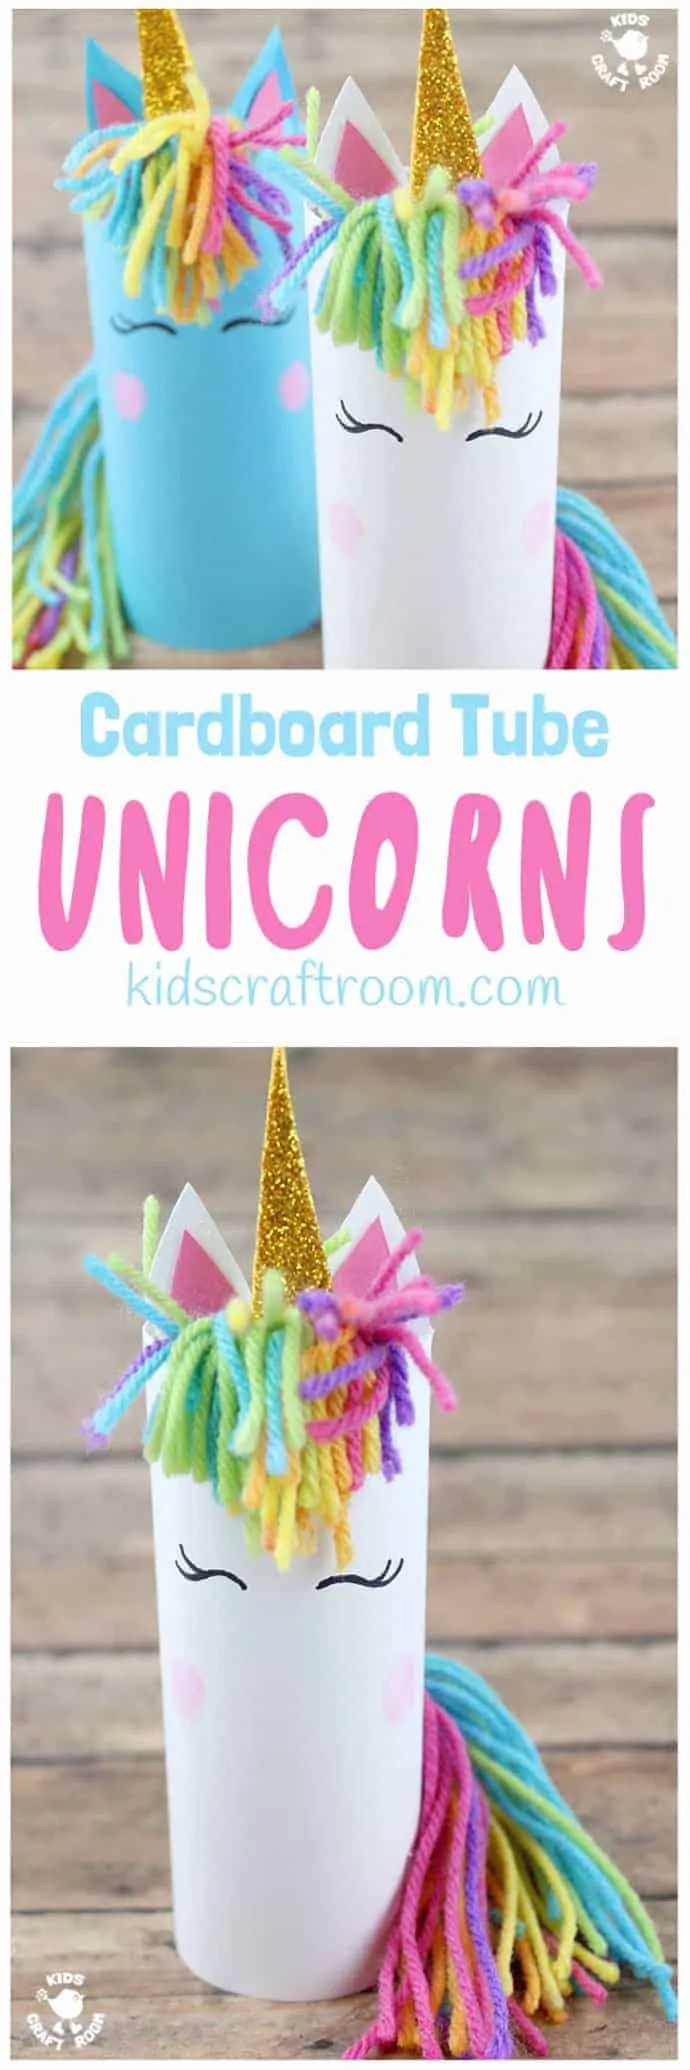 Wer kann schon Einhörnern widerstehen? Sind sie nicht der Inbegriff von Kindheit und Magie? Hier ist die bezaubernde Pappröhren-Einhorn-Bastelei, in die sich Kinder verlieben werden. Die Einhörner sind einfach zu basteln und ihre rosigen Wangen mit Fingerabdrücken verleihen ihnen eine ganz persönliche Note! Die Einhörner regen zu fantasievollem Spiel und zum Erzählen von Geschichten an. #unicorn #unicorns #unicorncrafts #kidscrafts #cardboardtubes #tprolls #papertubes #craftsforkids #recycledcrafts #preschoolcrafts #kidscraftideas #kidscraftroom